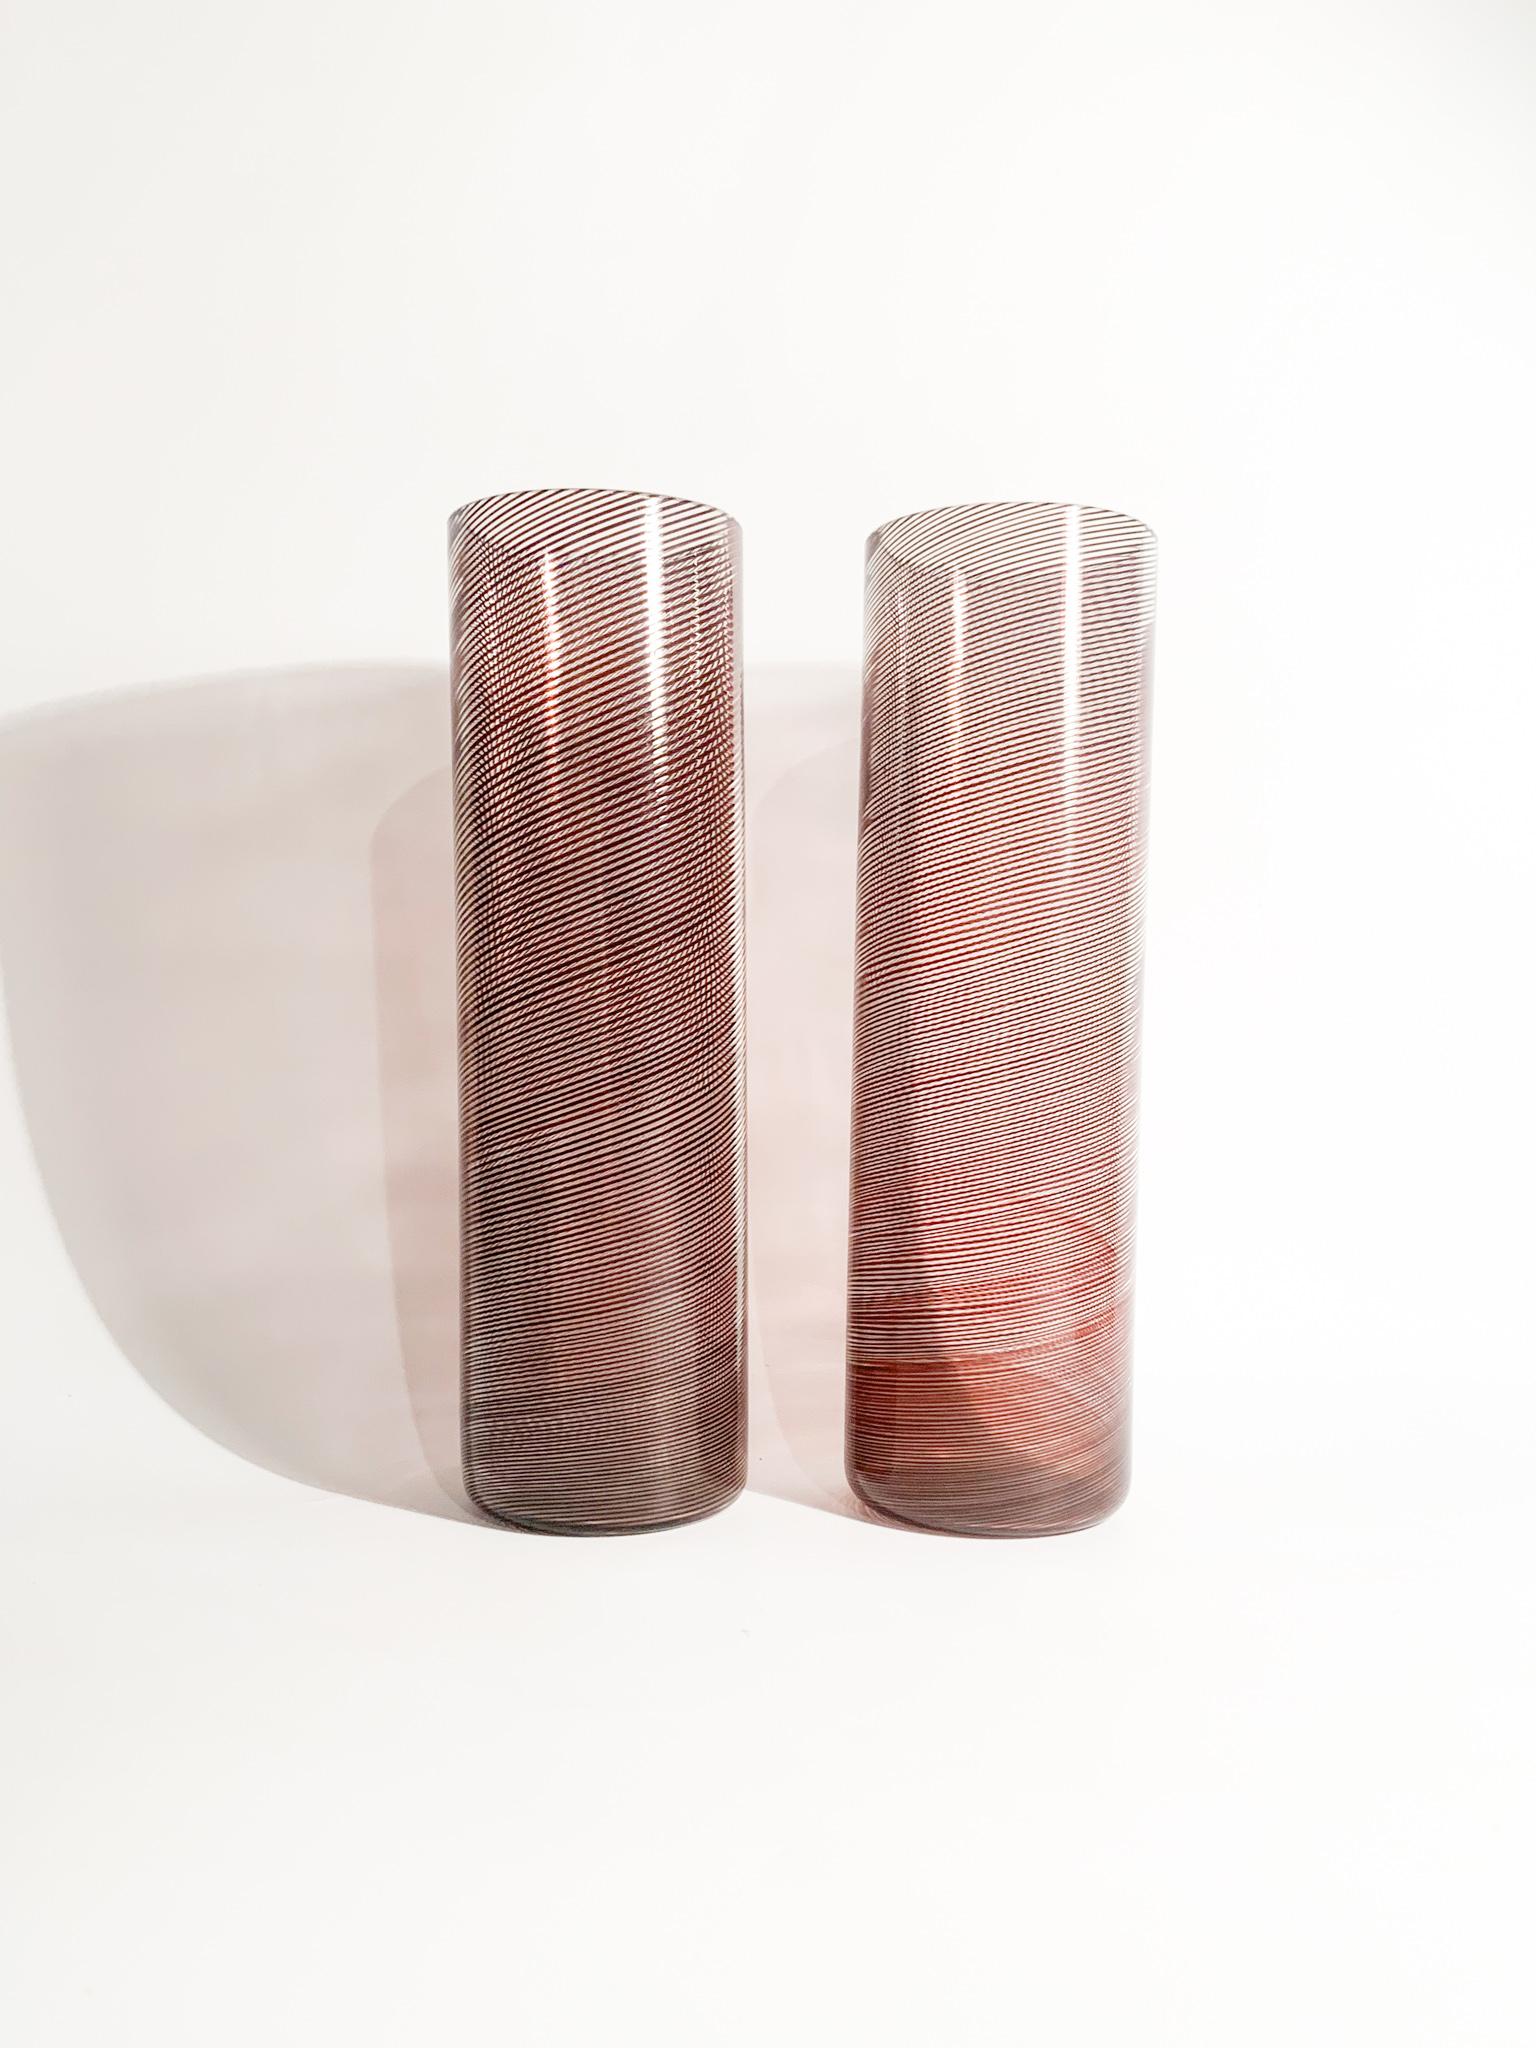 Paire de vases de forme cylindrique, avec filigrane en spirale, conçus par Tapio Wirkkala et fabriqués par Venini dans les années 1970.

Ø cm 8 h cm 27

Tapio Veli Ilmari Wirkkala (Hanko, 2 juin 1915 - Helsinki, 19 mai 1985) était un designer et